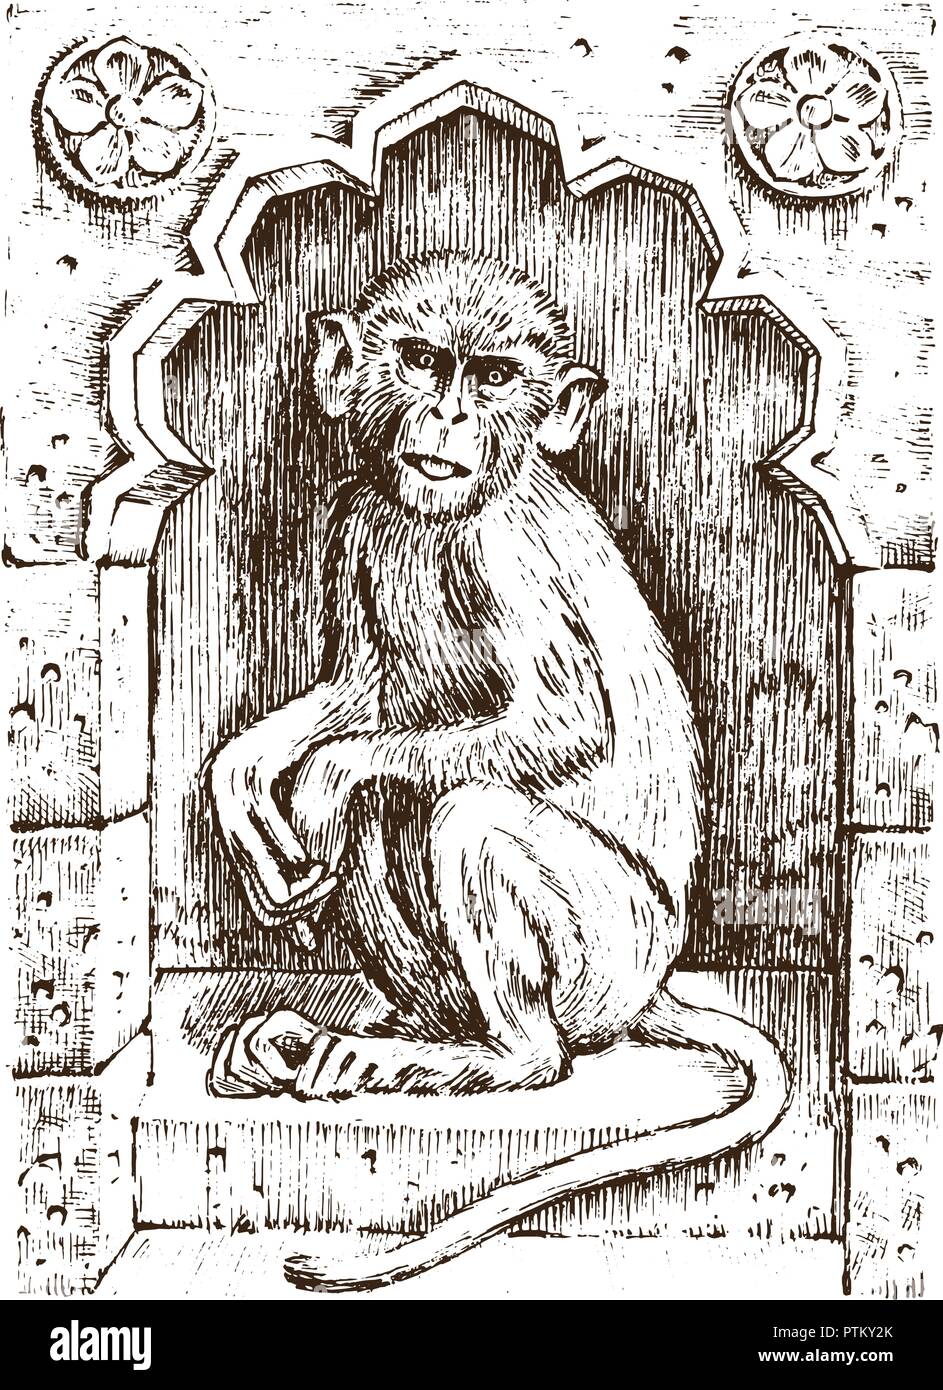 Cute Affe oder Vintage Primas. Hand gezeichnet, graviert wildes Tier. Zoologie afrikanische Symbol. Vector Illustration. Poster für Buch oder Website Stock Vektor